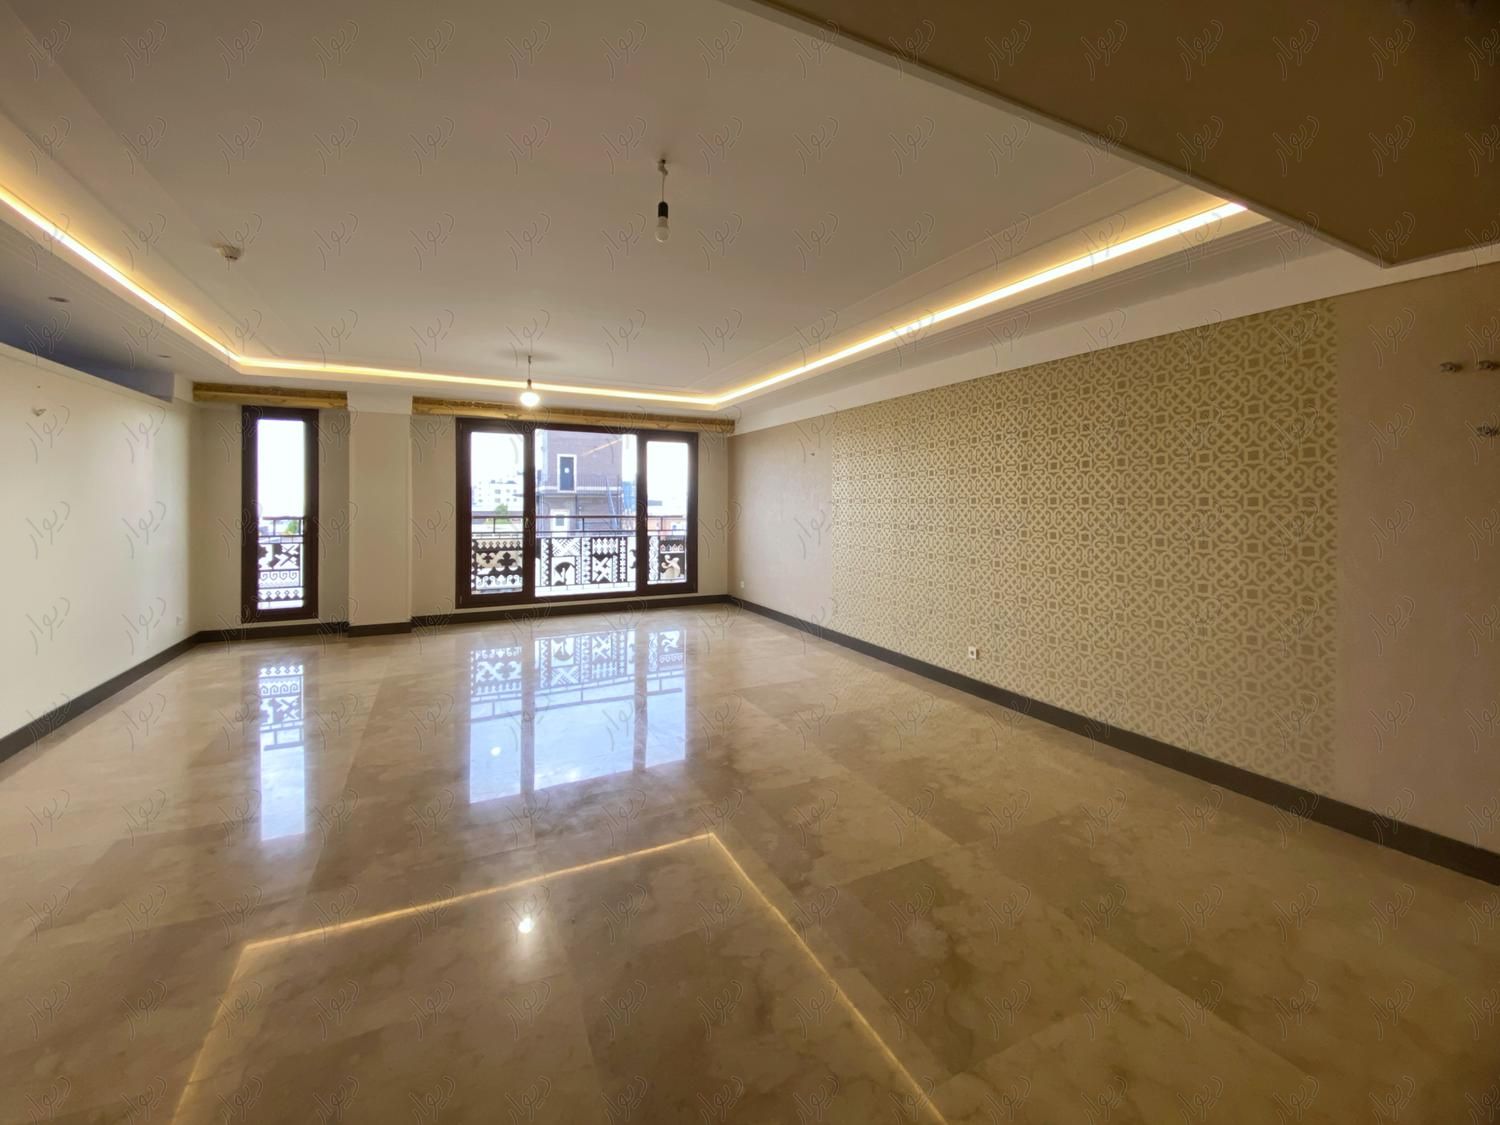 عمارت بکر (منصور) 230متر 3پارکینگ طبقه6 هتلینگ|فروش آپارتمان|تهران, دروس|دیوار